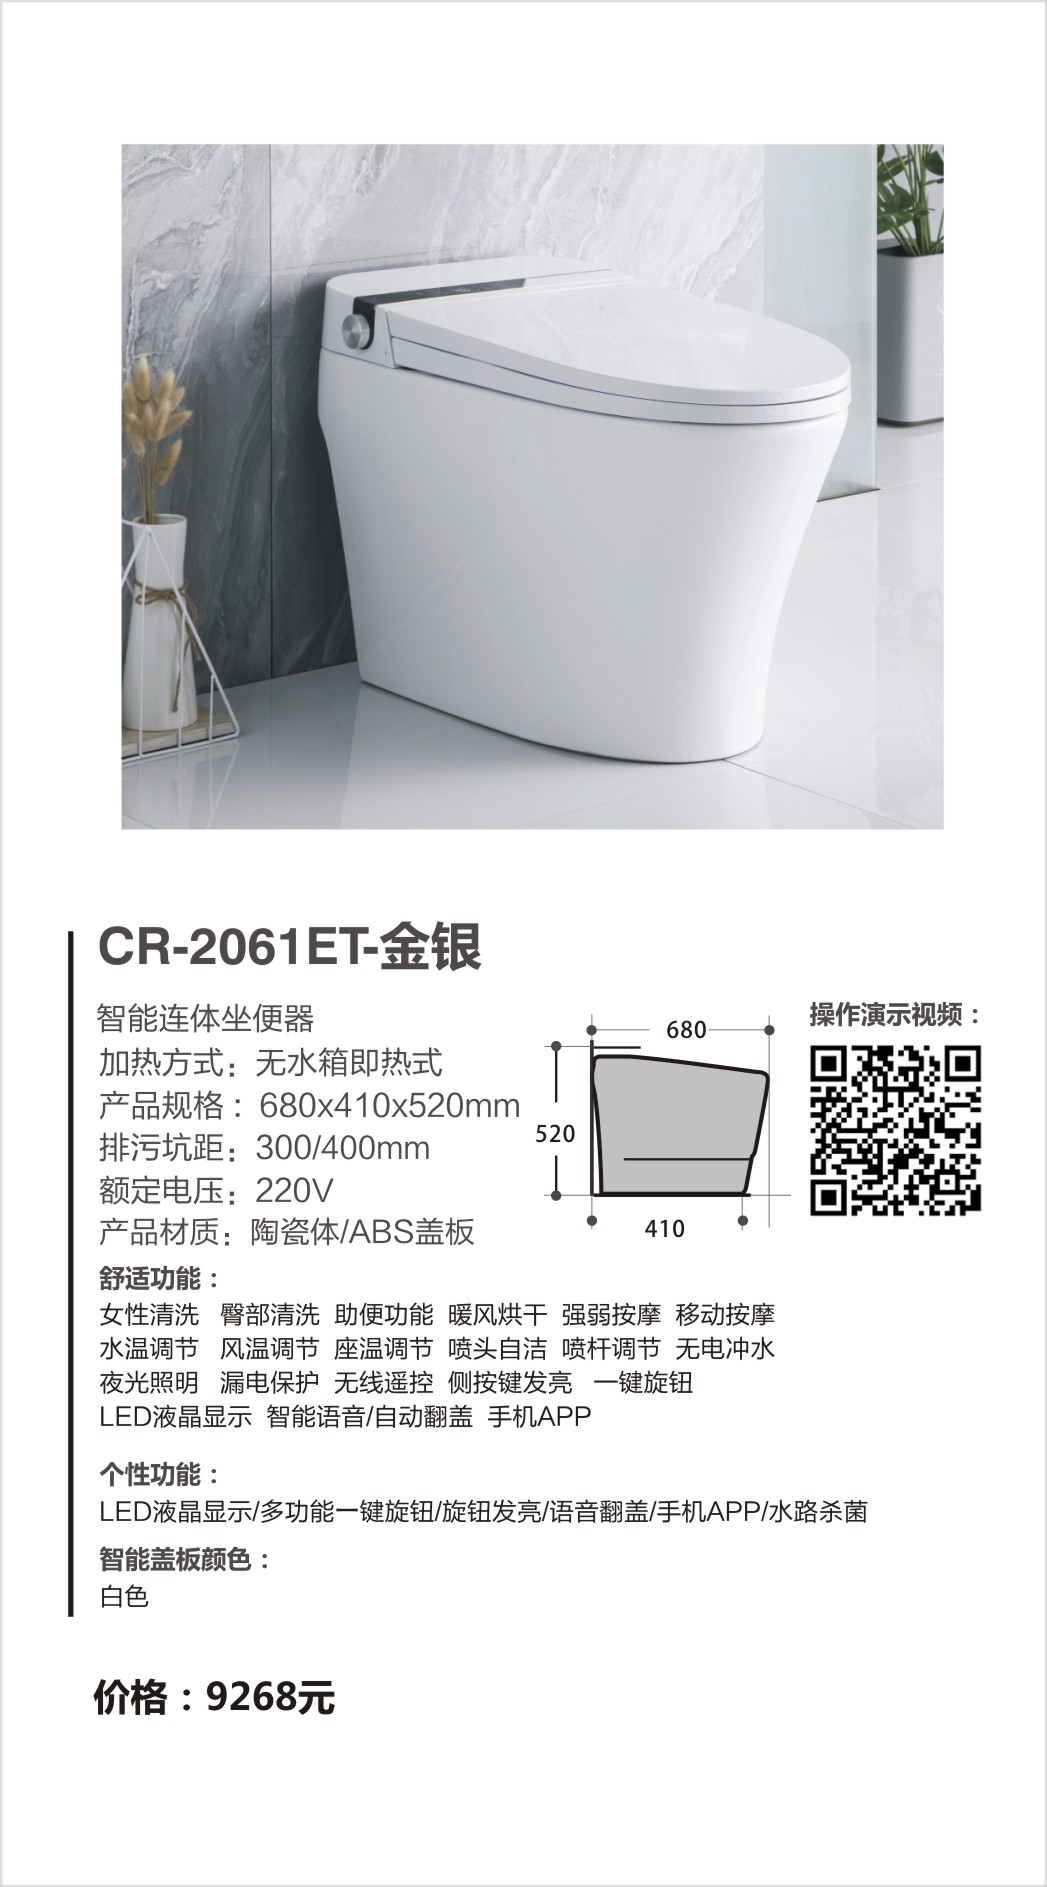 超人（chaoren）卫浴系列只能马桶CR-2061ET-J金银